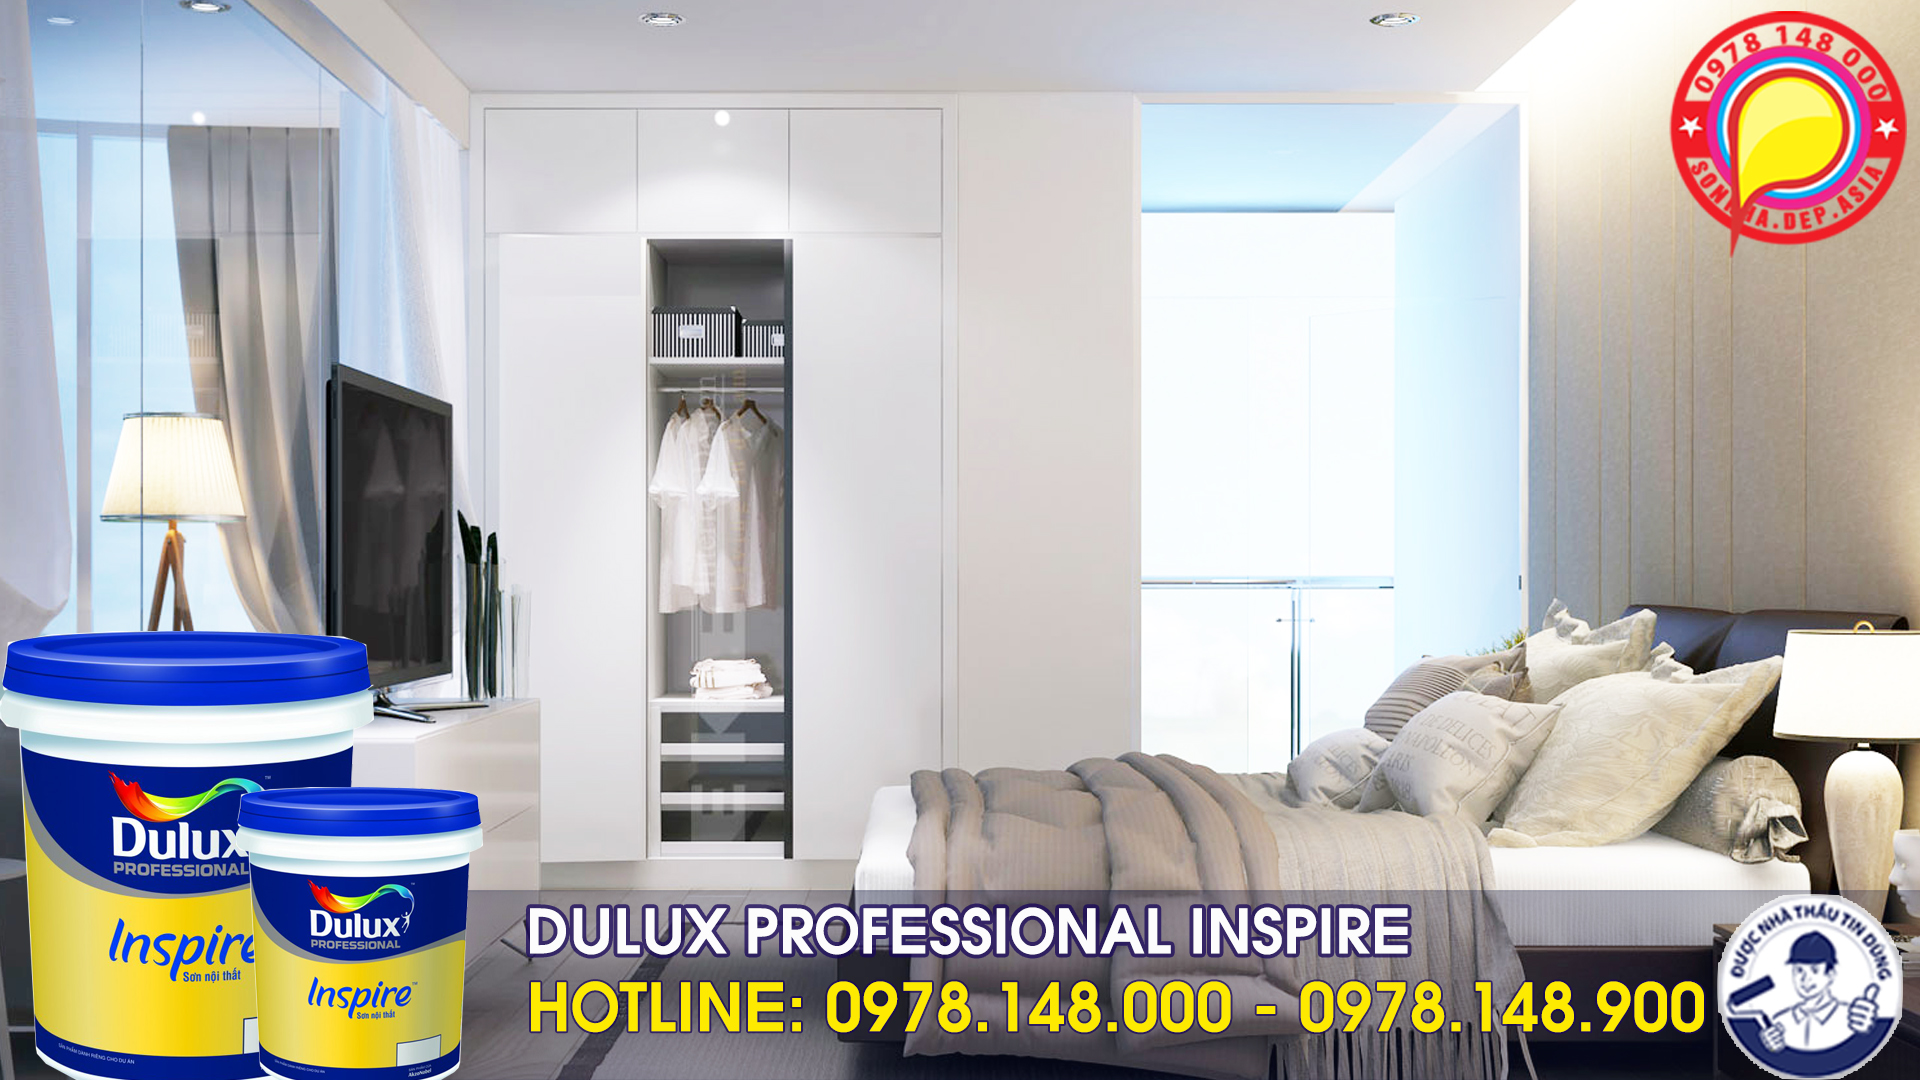 Sơn Dulux Professional Inspire chính hãng 2017 - 2